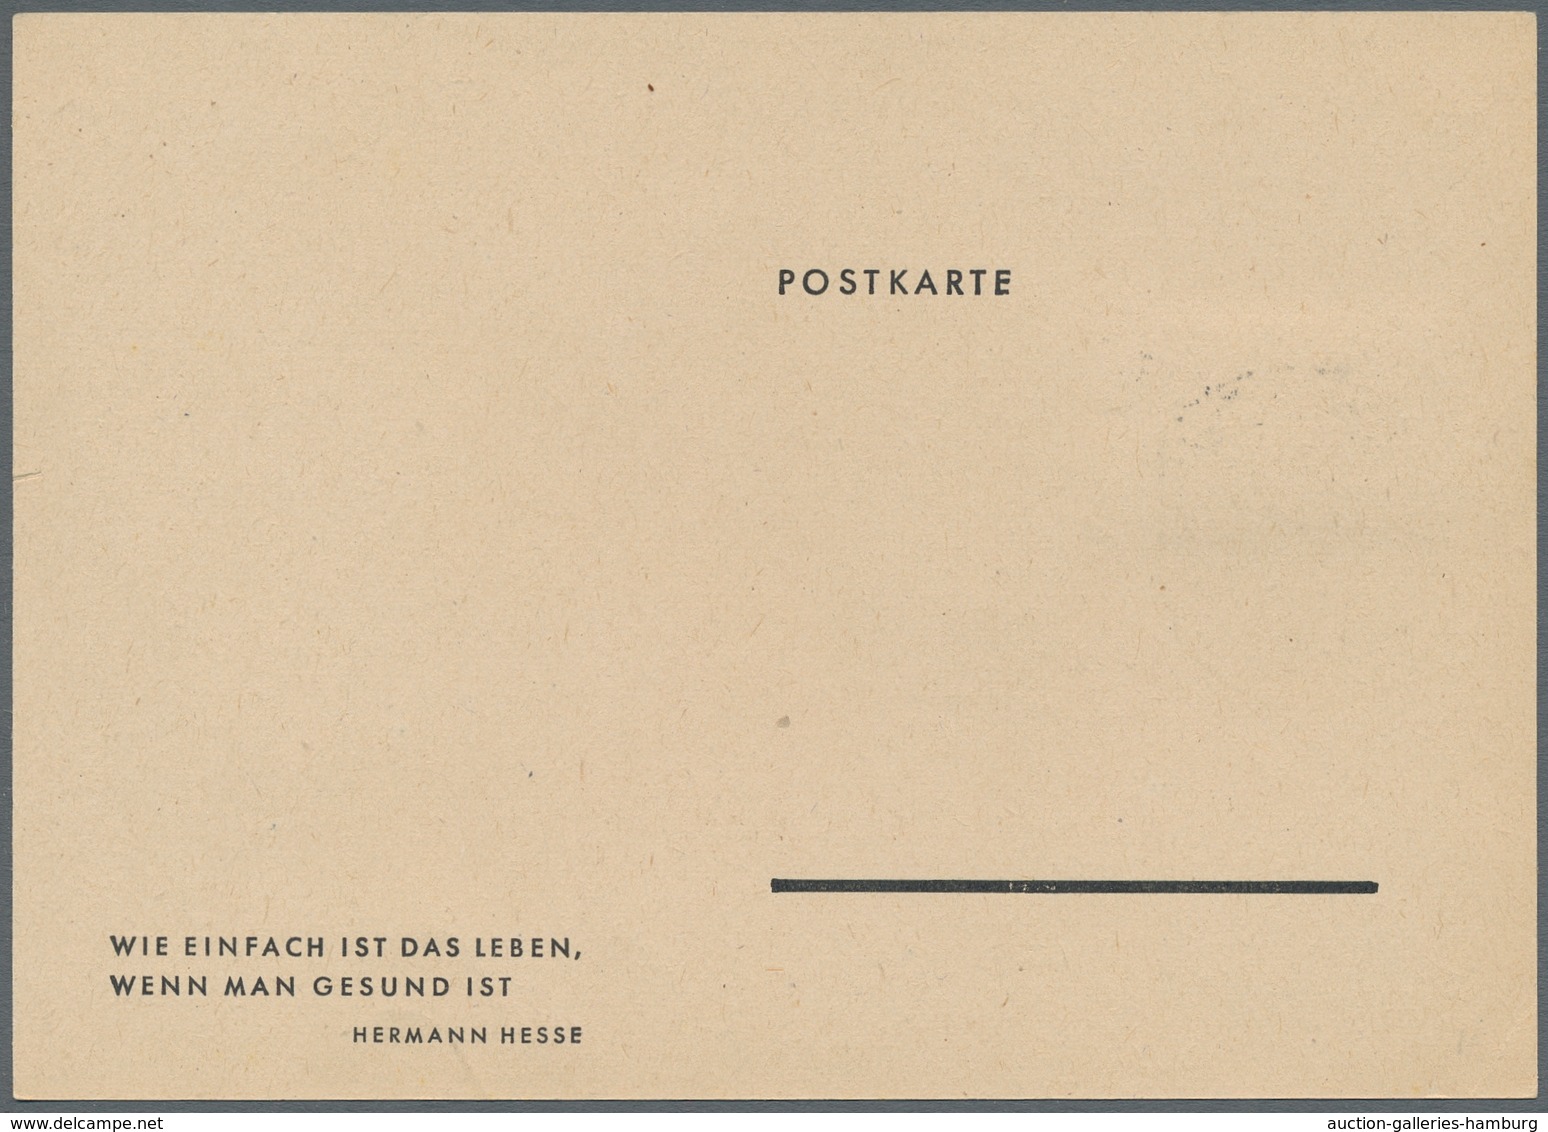 Bundesrepublik Deutschland: 1951-57, 12 meist verschiedene Maximumkarten, dabei "Mona Lisa", "Otto M